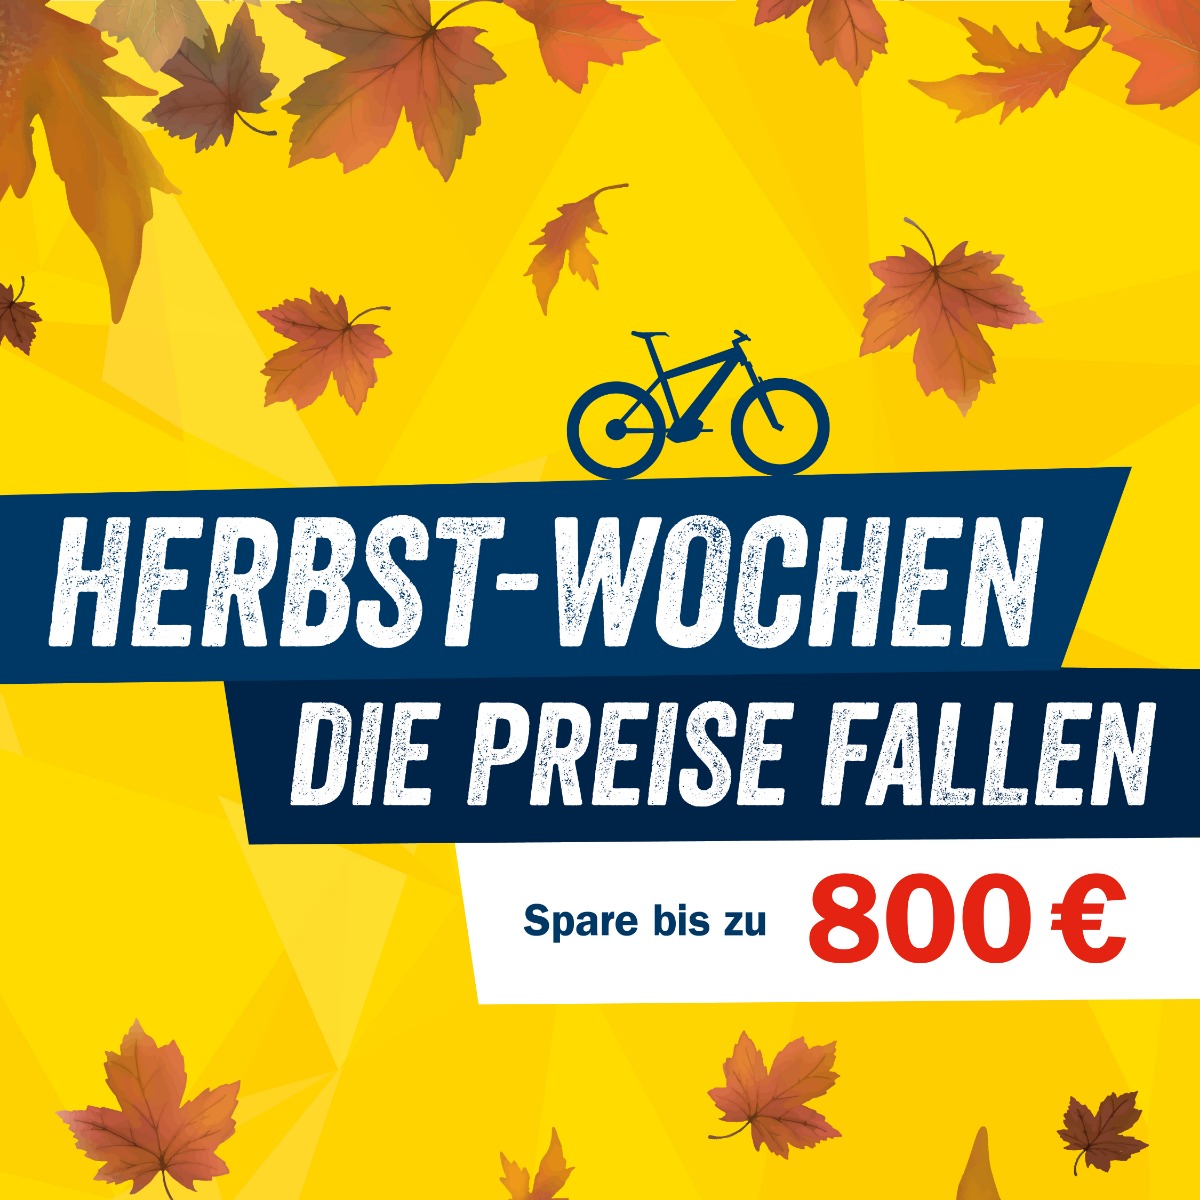 Bike Angebote in den Herbst-Wochen